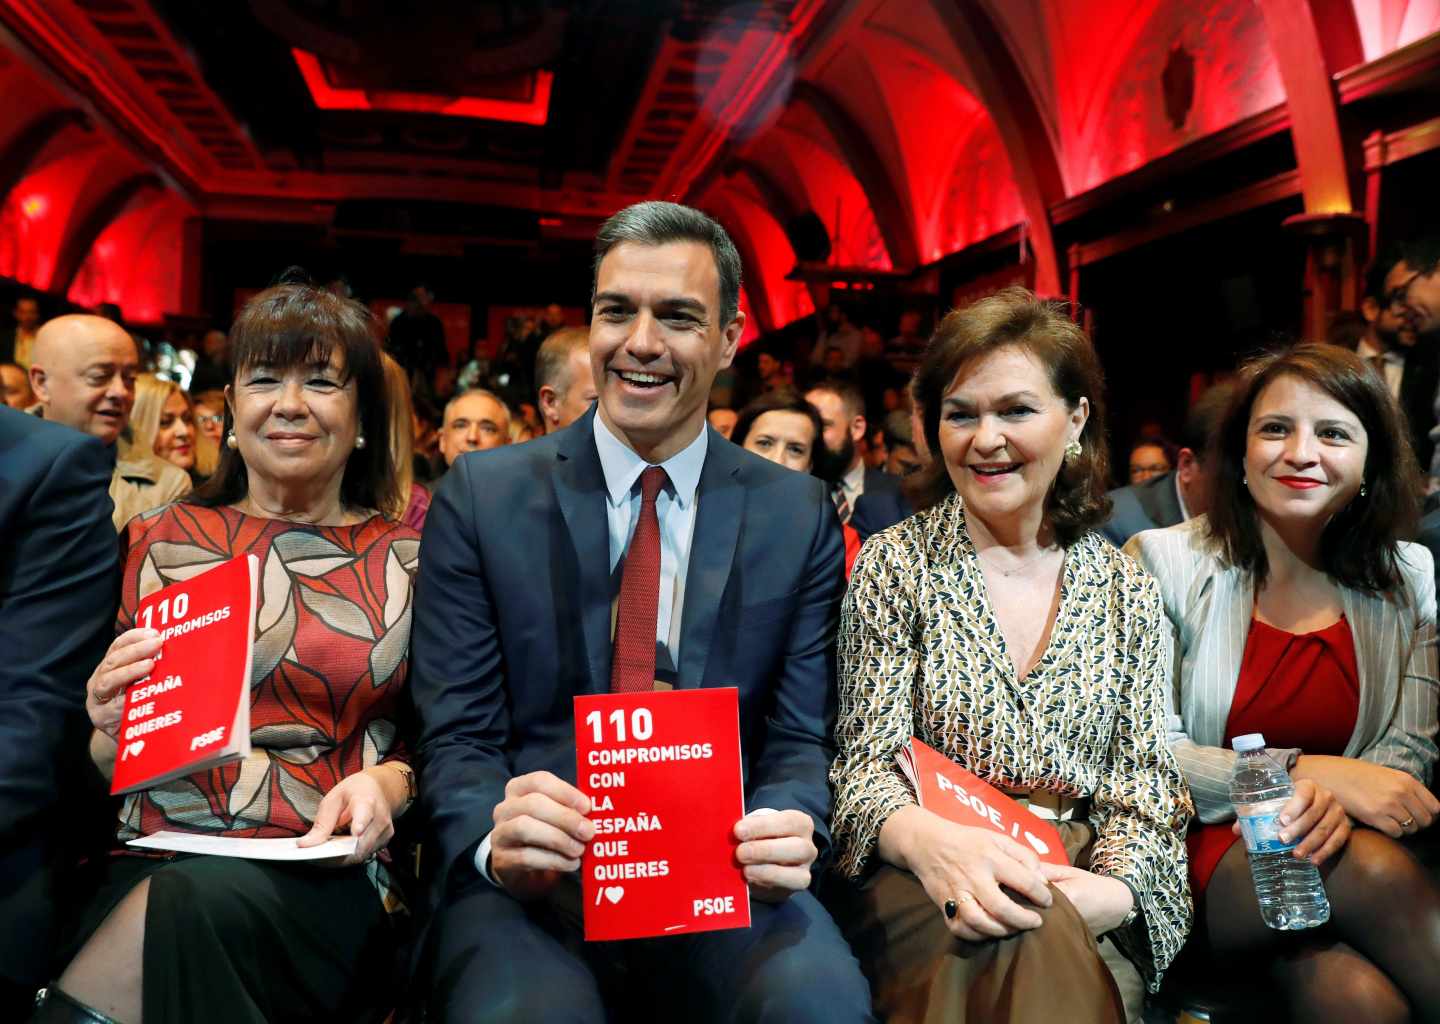 Sánchez promete un Gobierno con "fortaleza y diálogo" sin mencionar a Cataluña